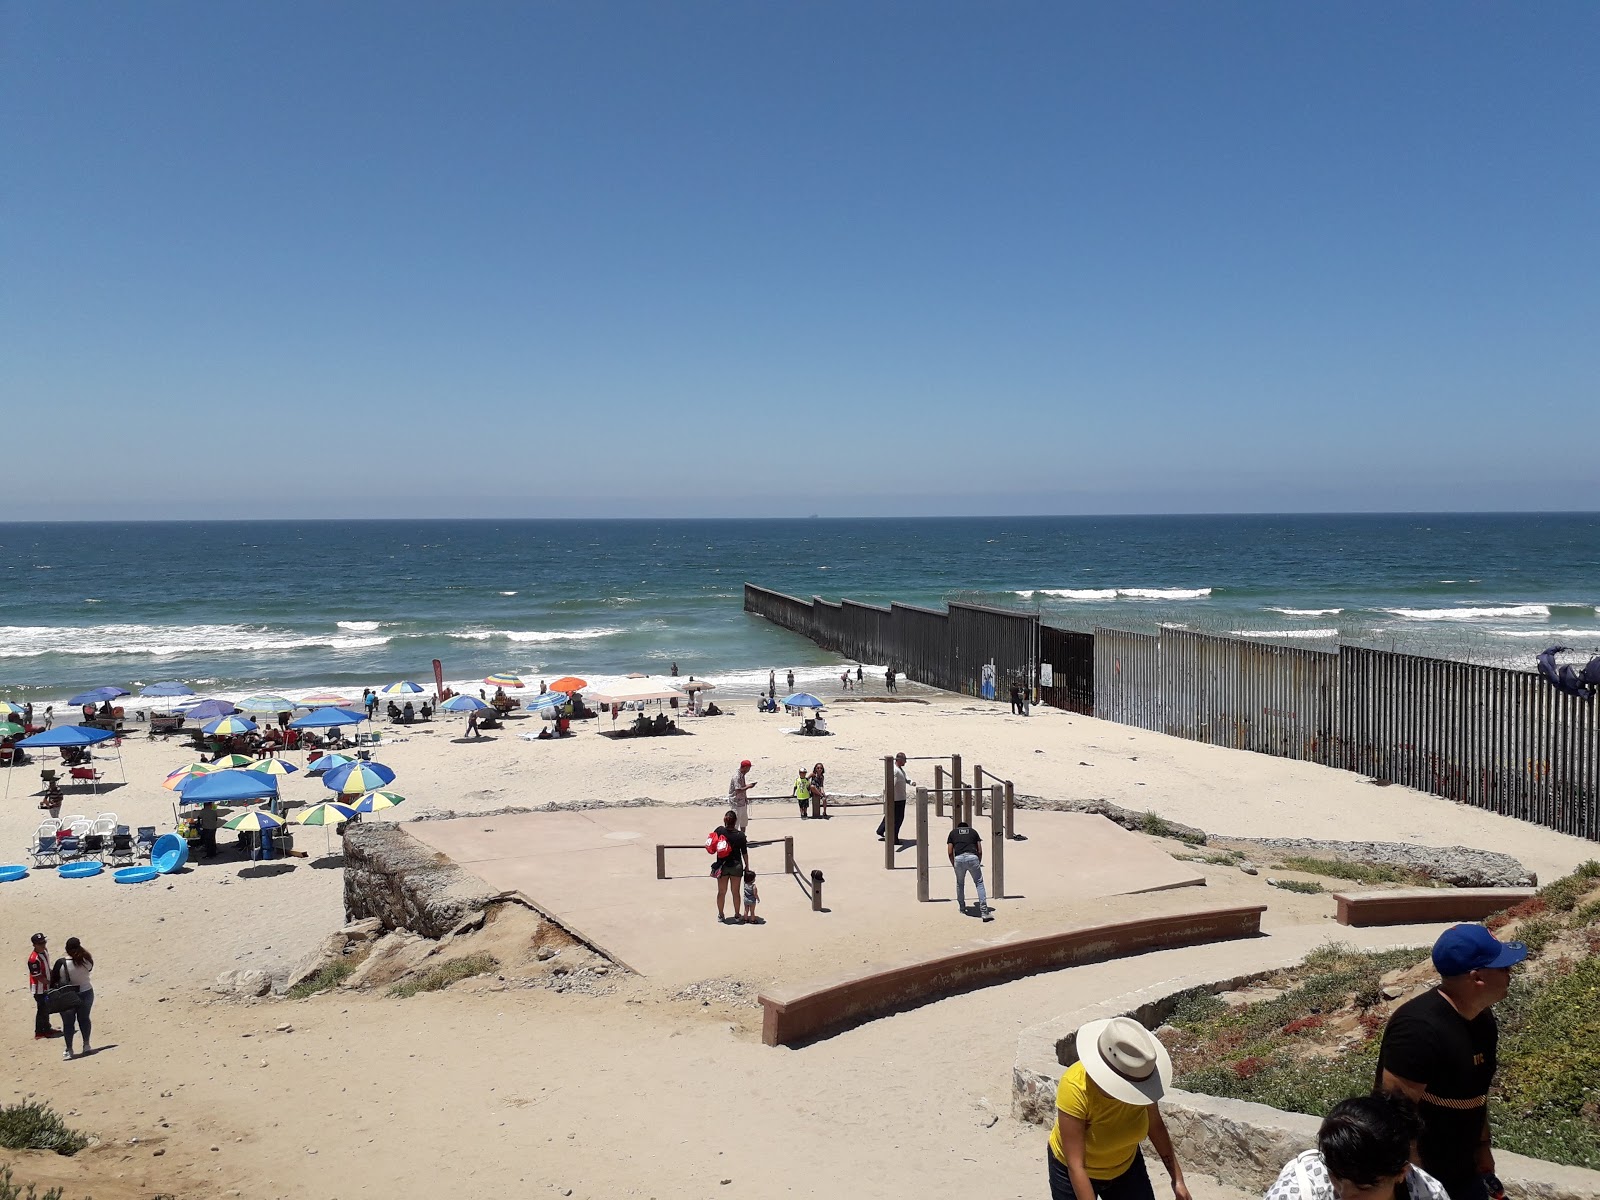 Playa de Tijuana'in fotoğrafı - rahatlamayı sevenler arasında popüler bir yer